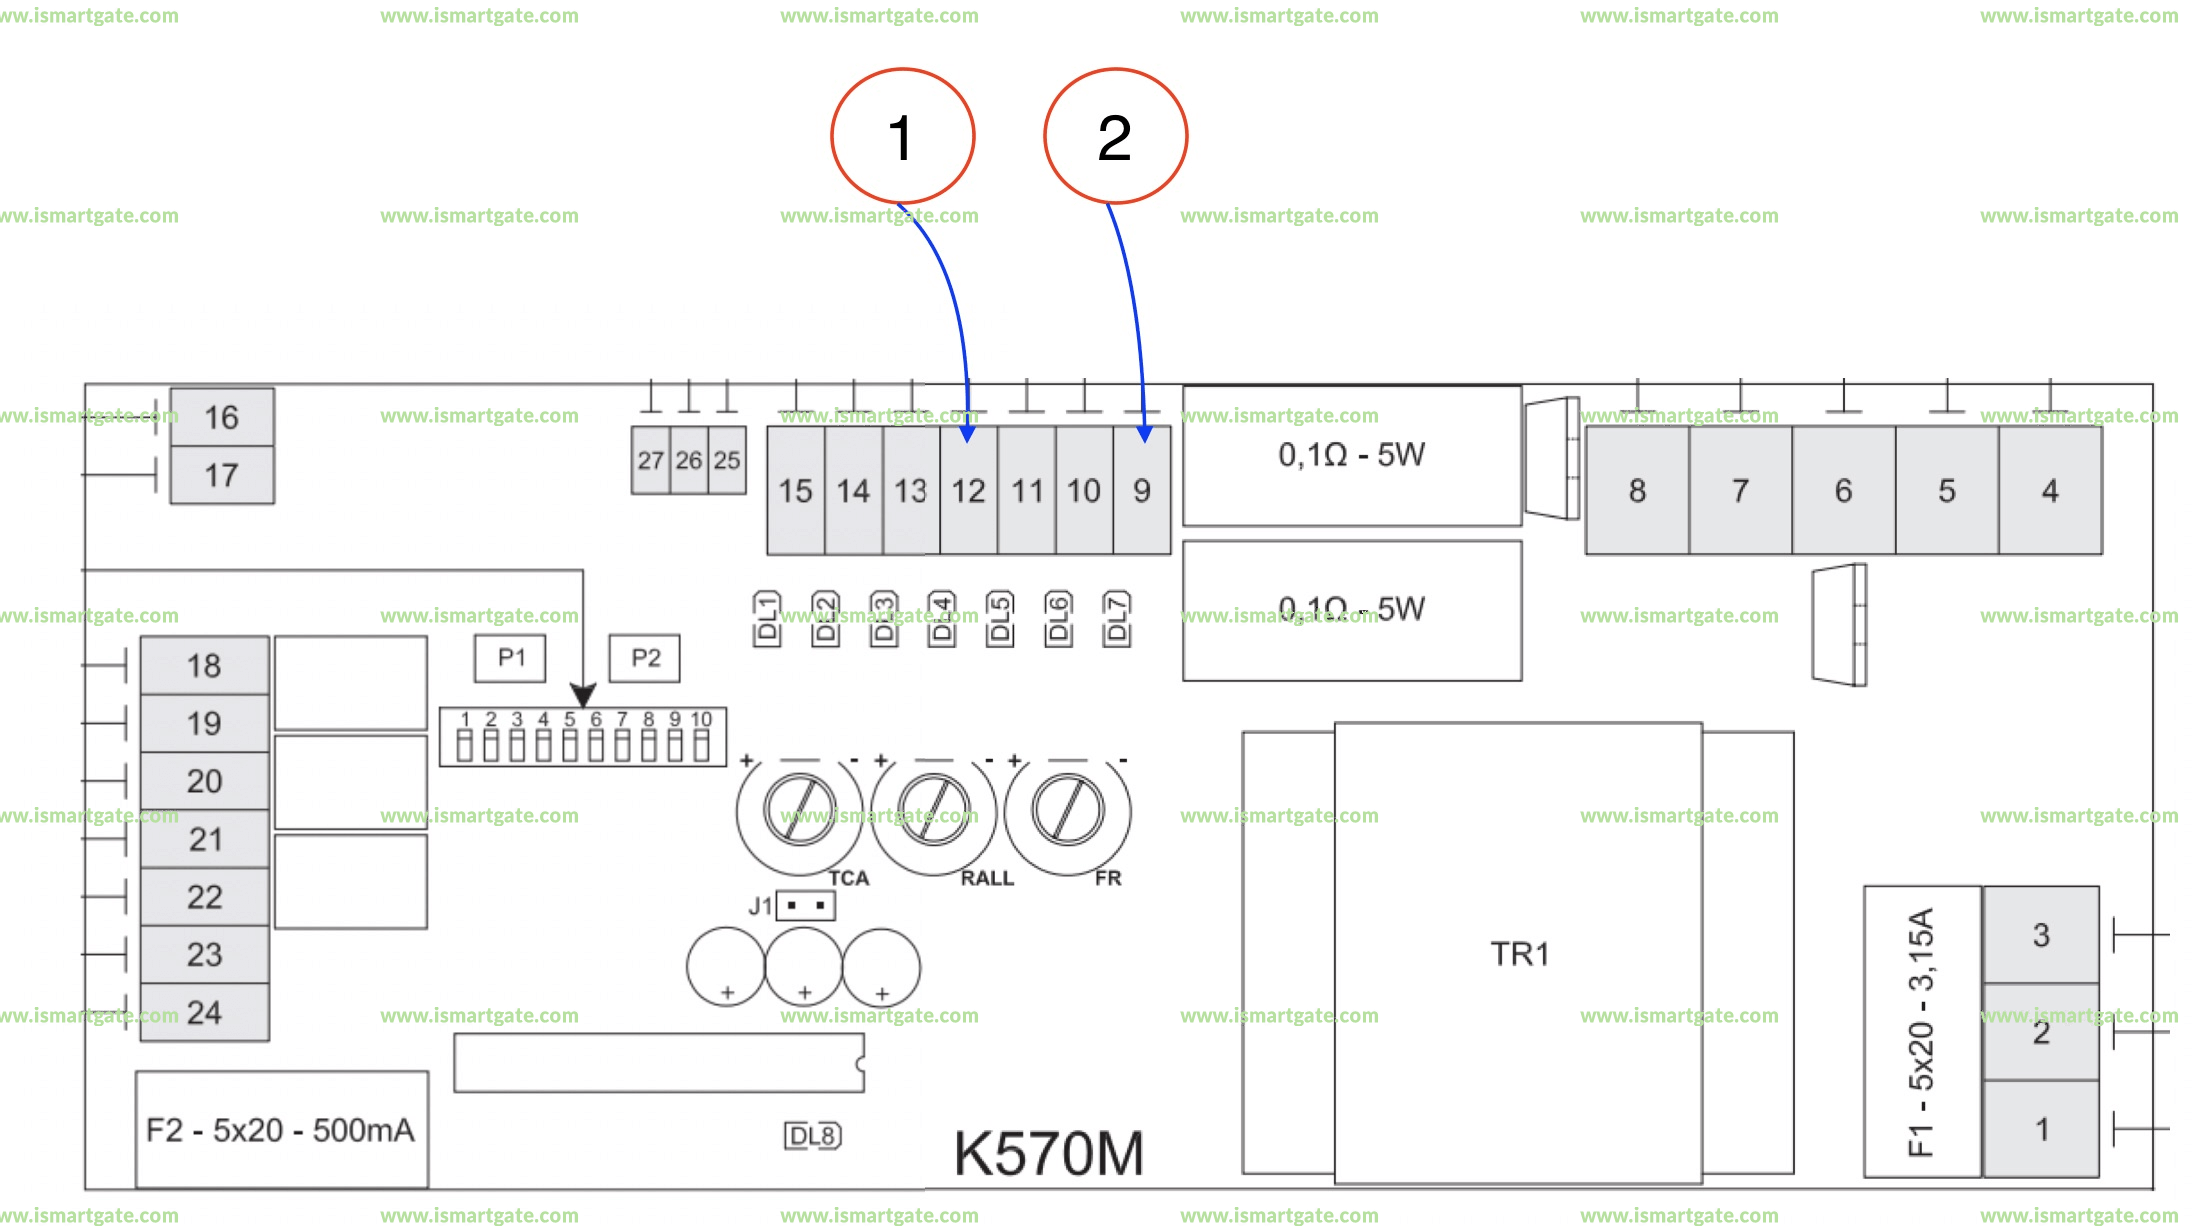 Wiring diagram for TAU K570M